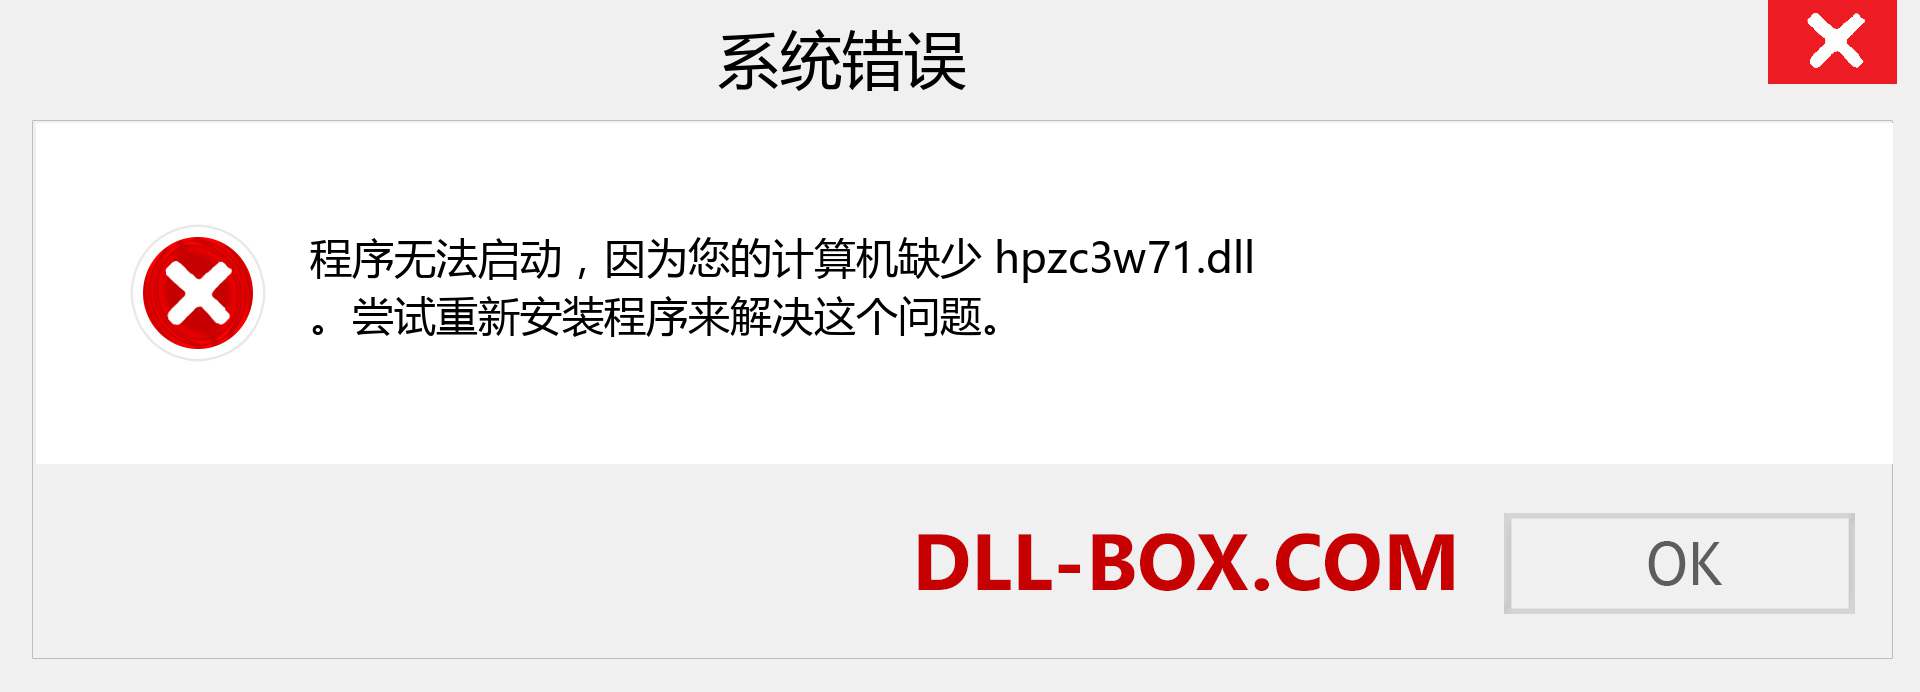 hpzc3w71.dll 文件丢失？。 适用于 Windows 7、8、10 的下载 - 修复 Windows、照片、图像上的 hpzc3w71 dll 丢失错误